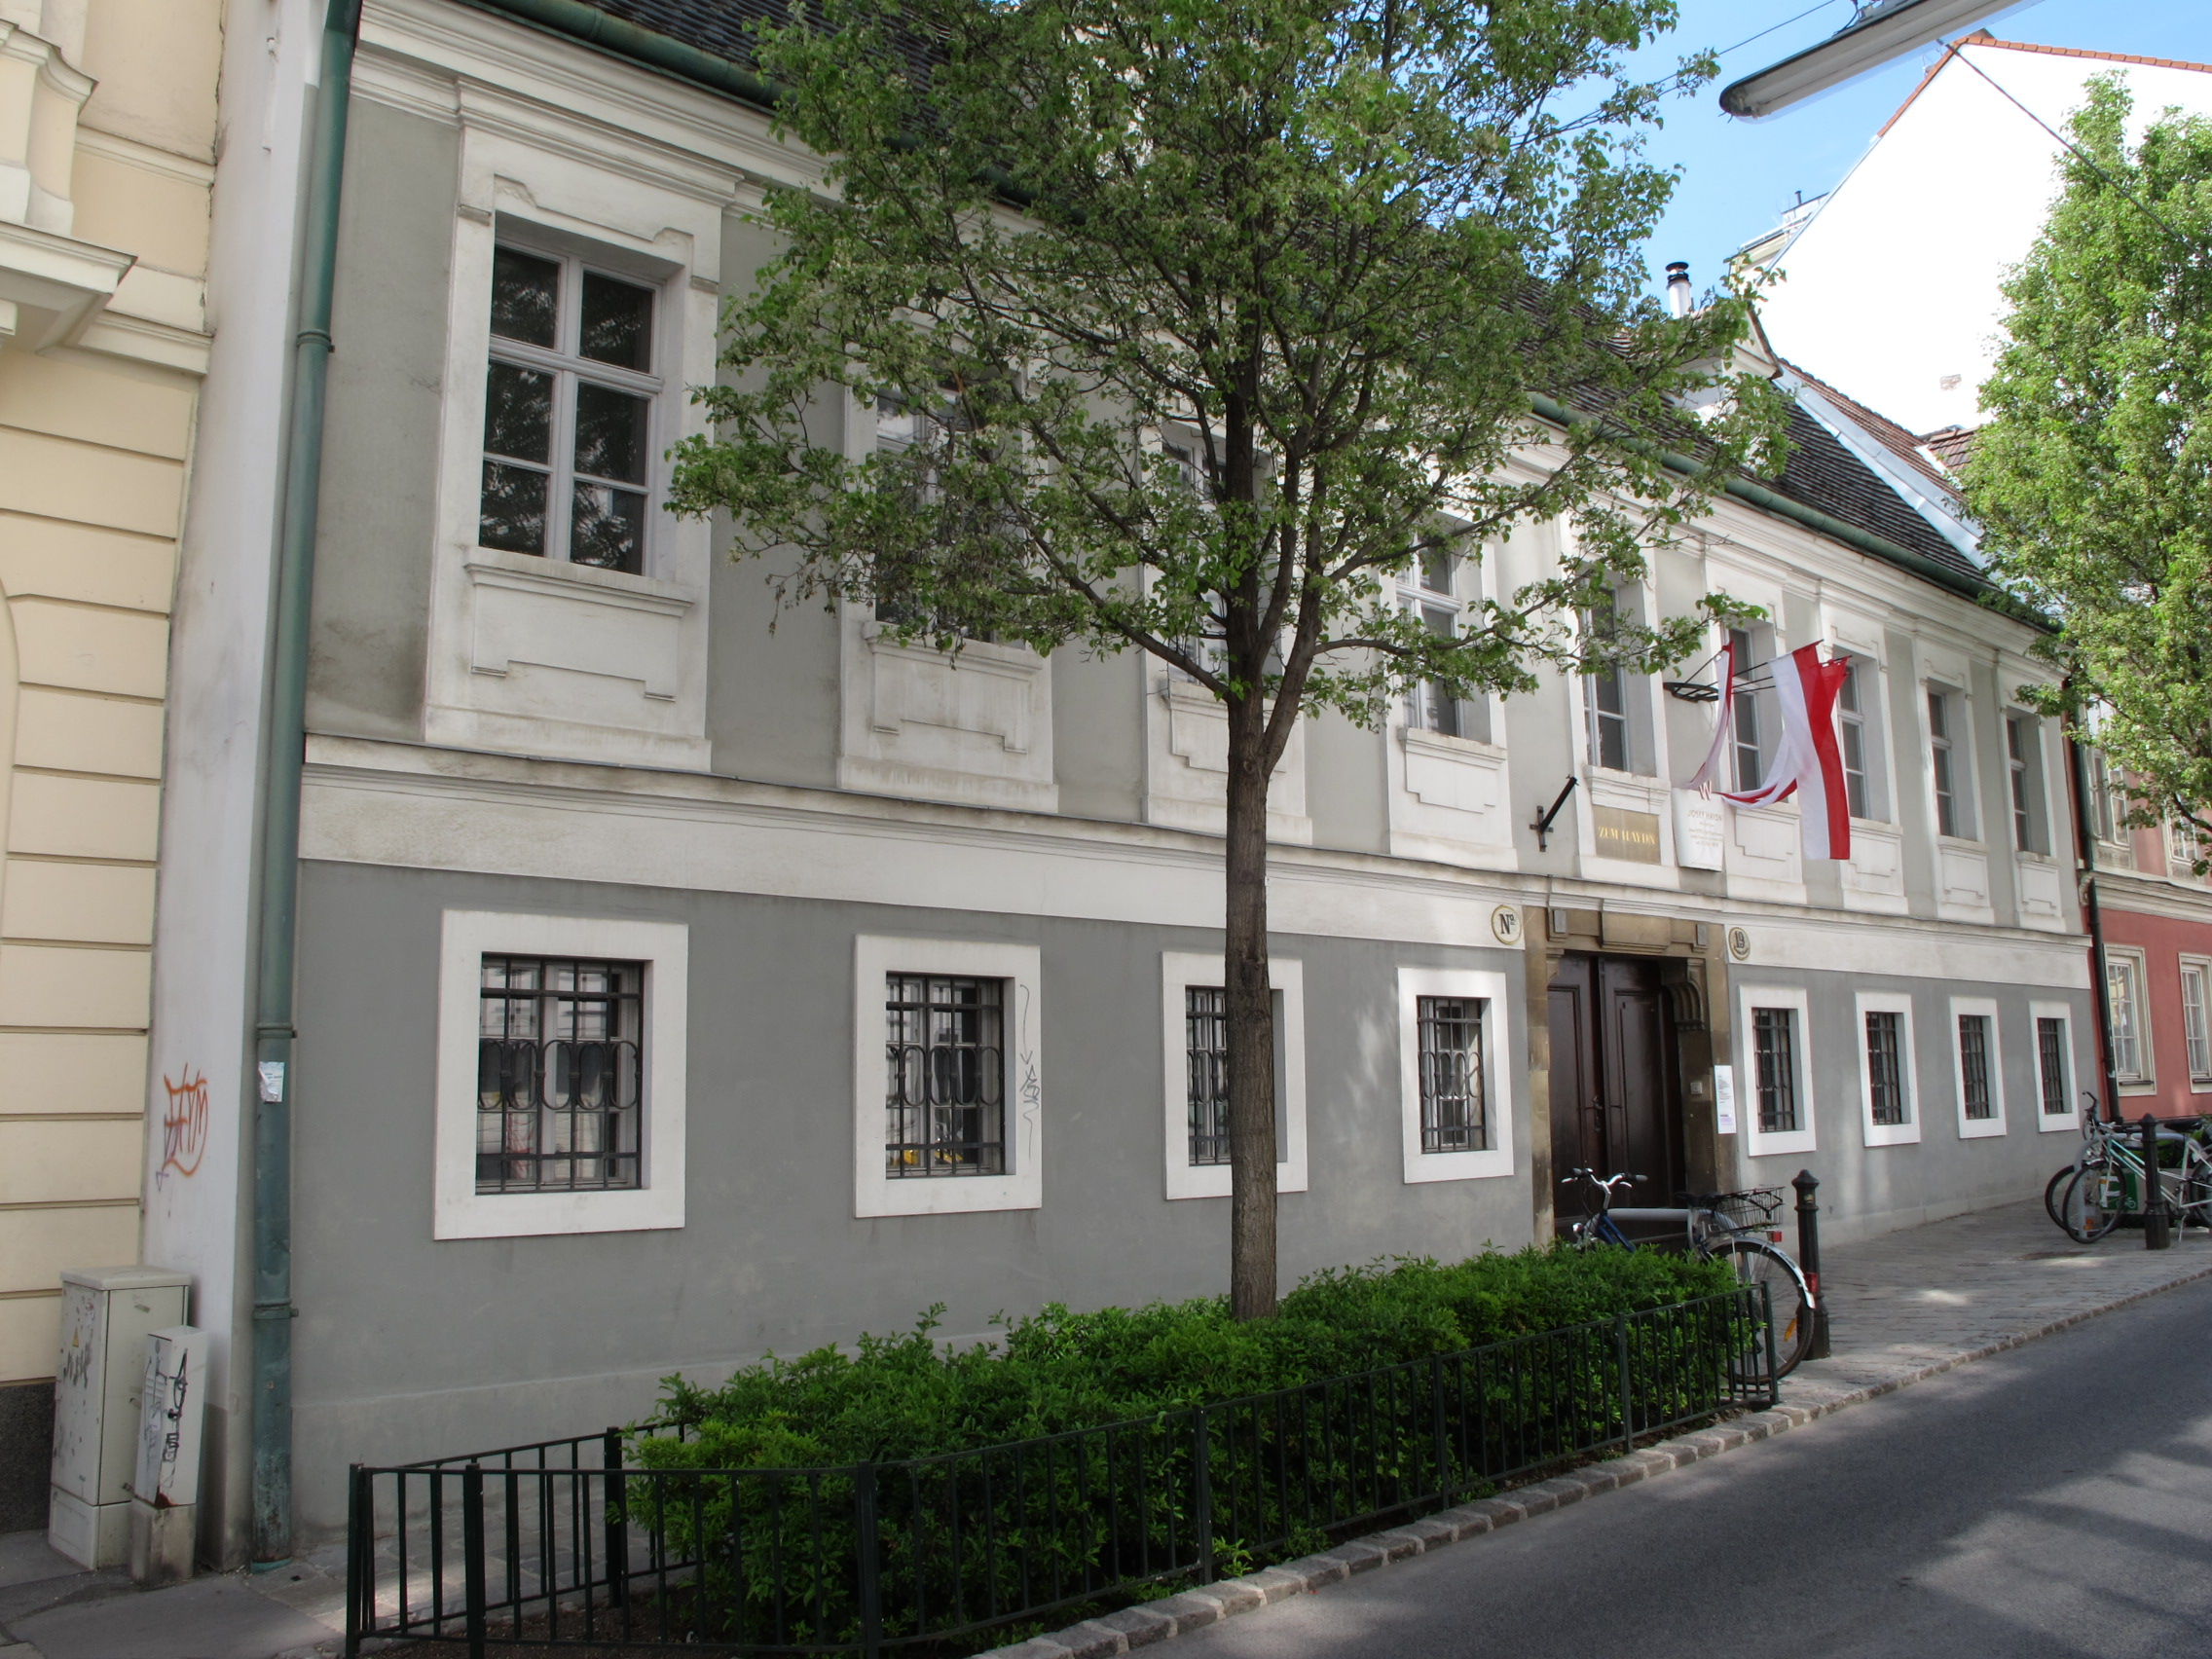 Haydnhaus, Vienna